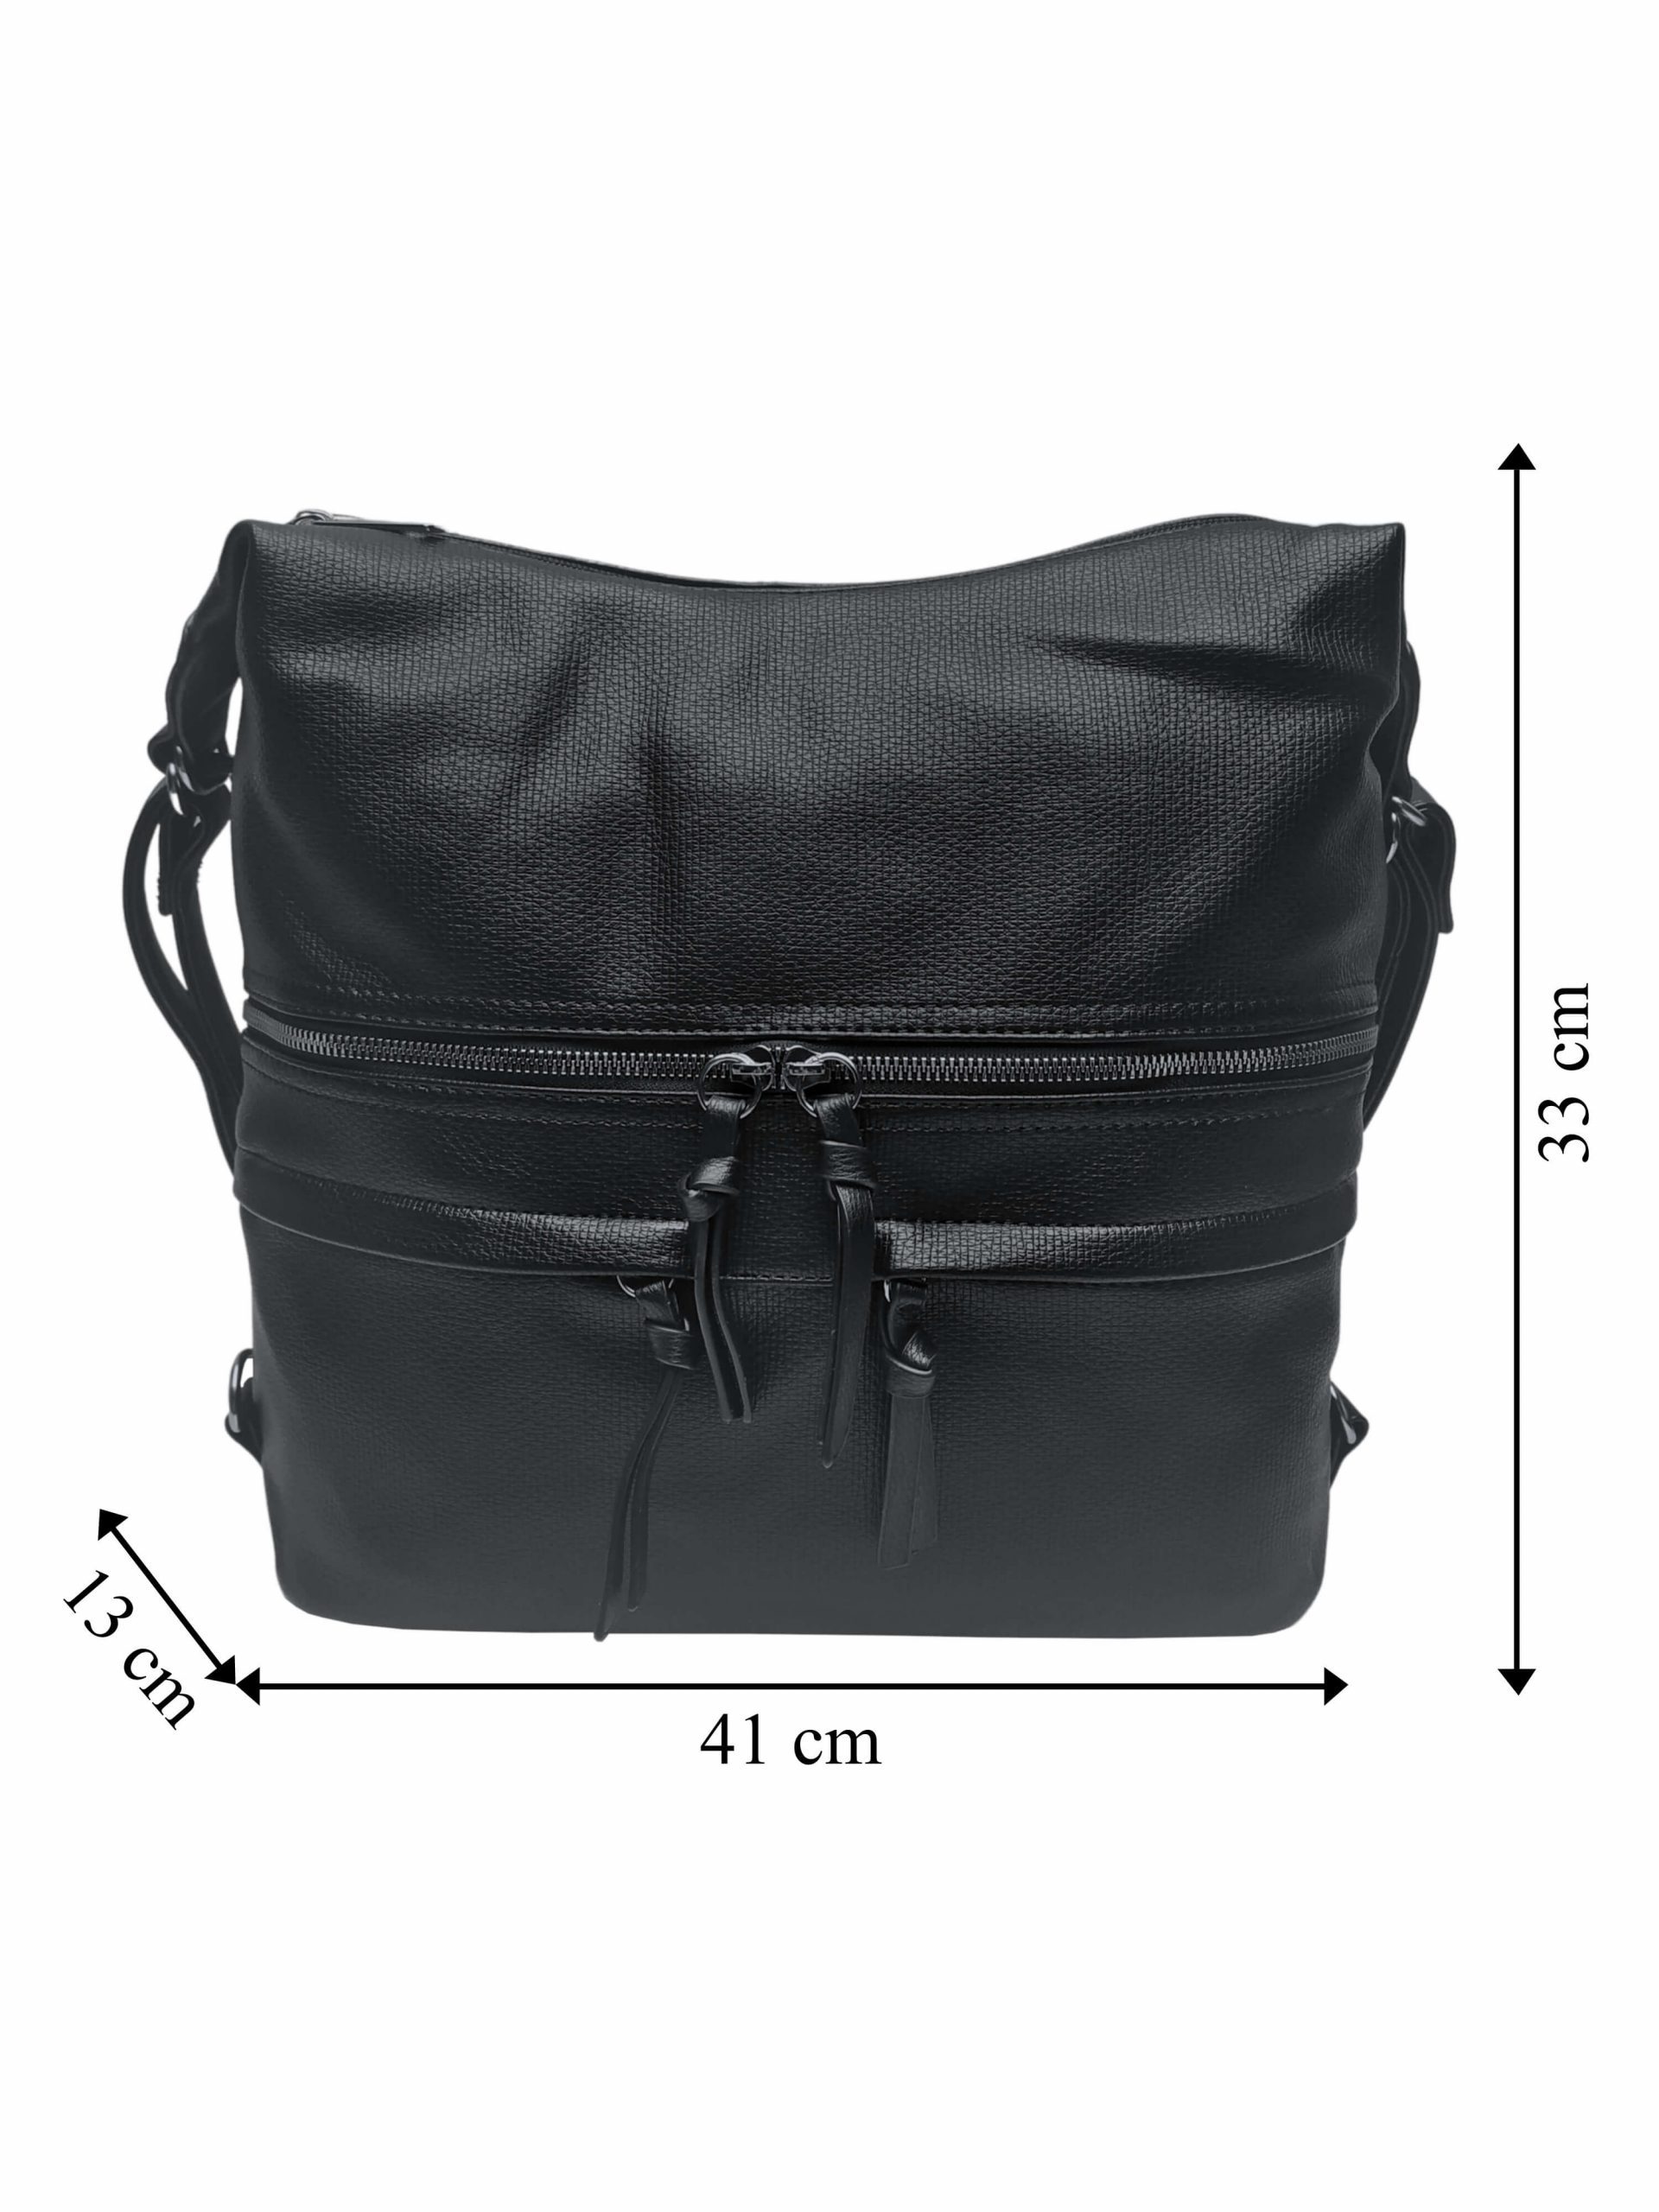 Velký černý kabelko-batoh s kapsami, Tapple, H181175N2, přední strana kabelko-batohu s rozměry